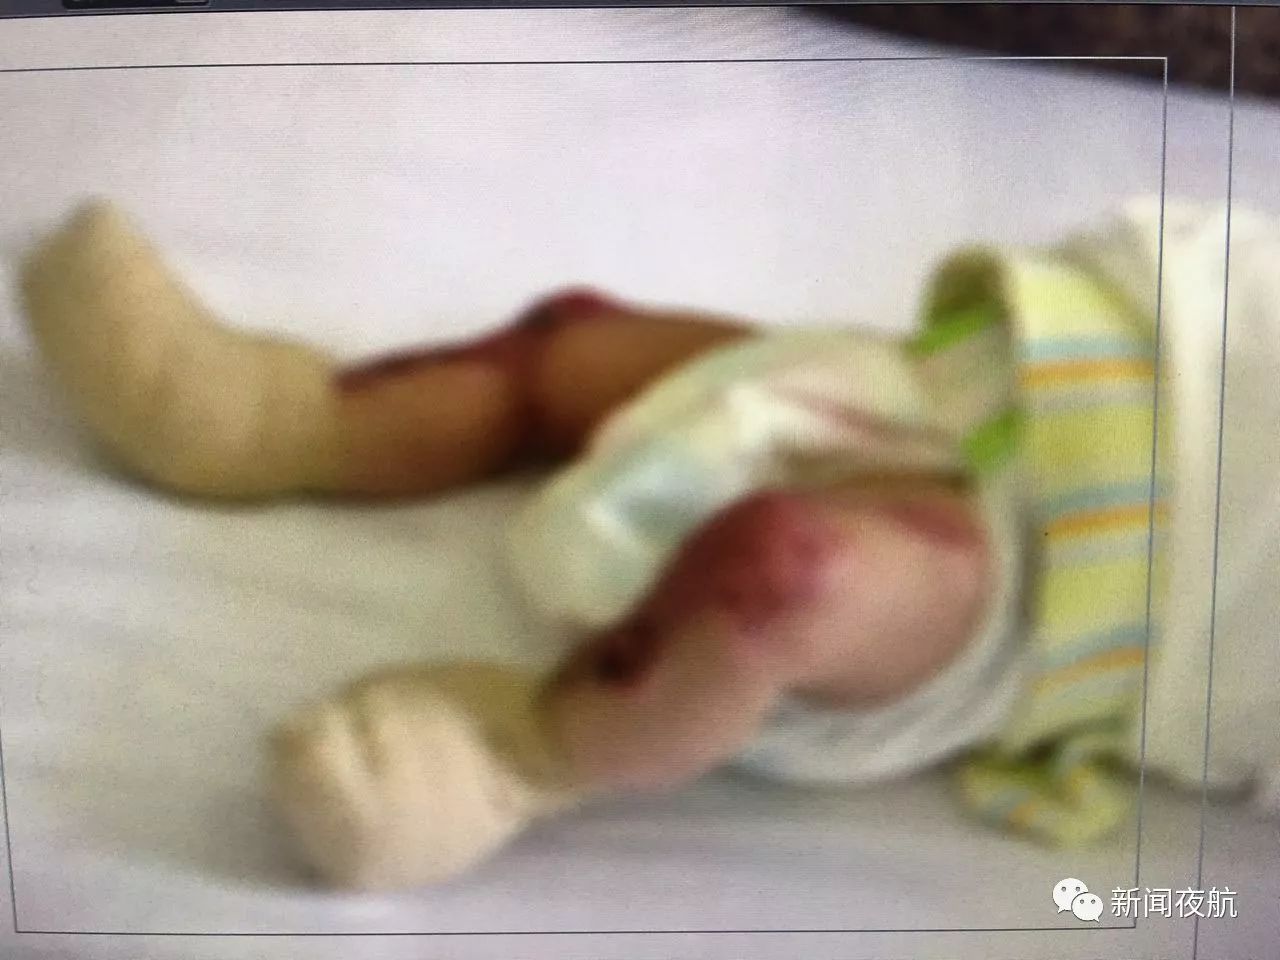 女婴罕见先天皮肤缺失 下肢双手肌肉暴露在外